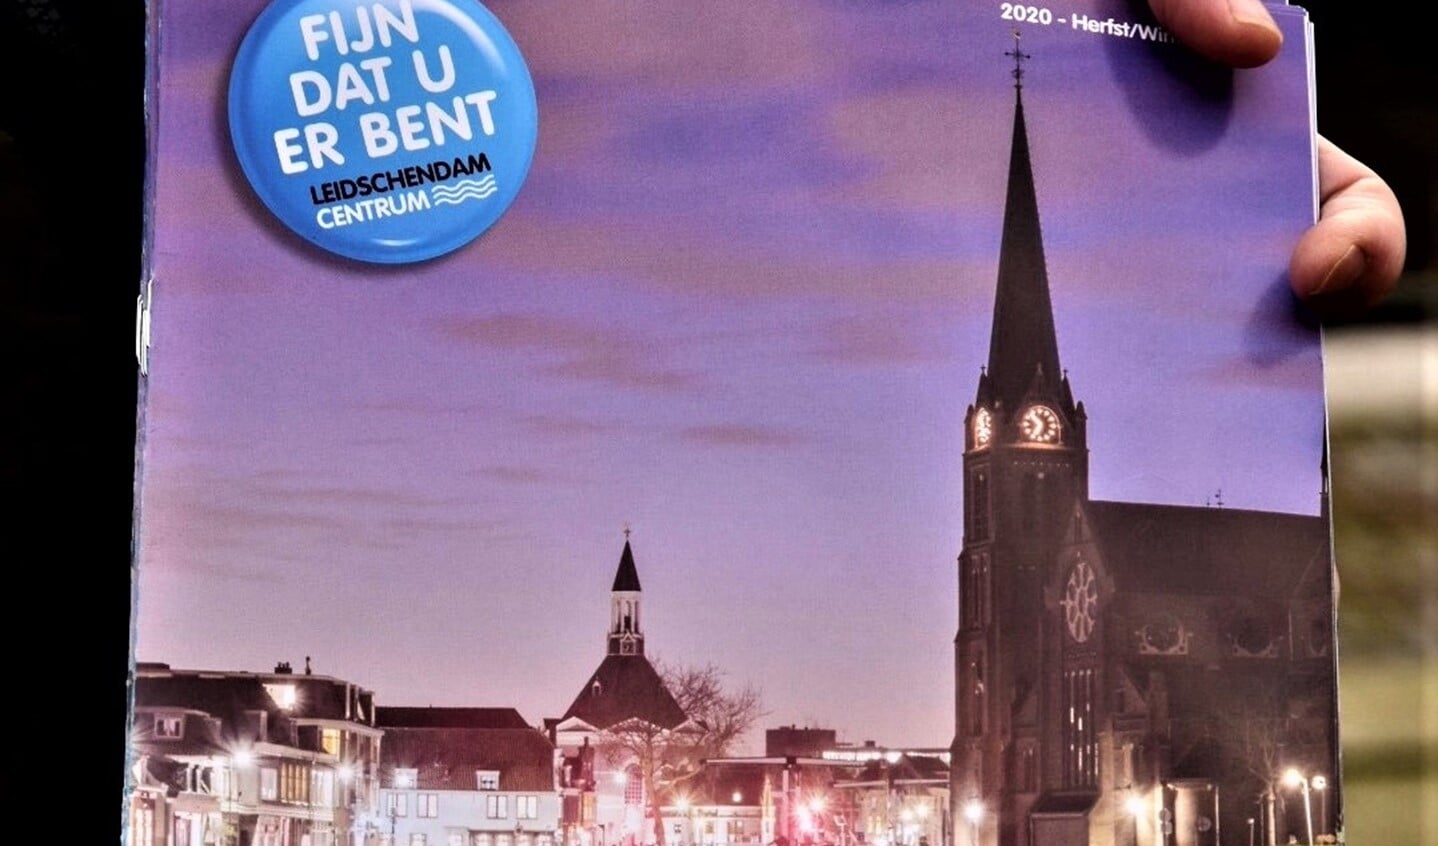 Cover van het magazine over Leidschendam Centrum (foto's: gemeente LV).